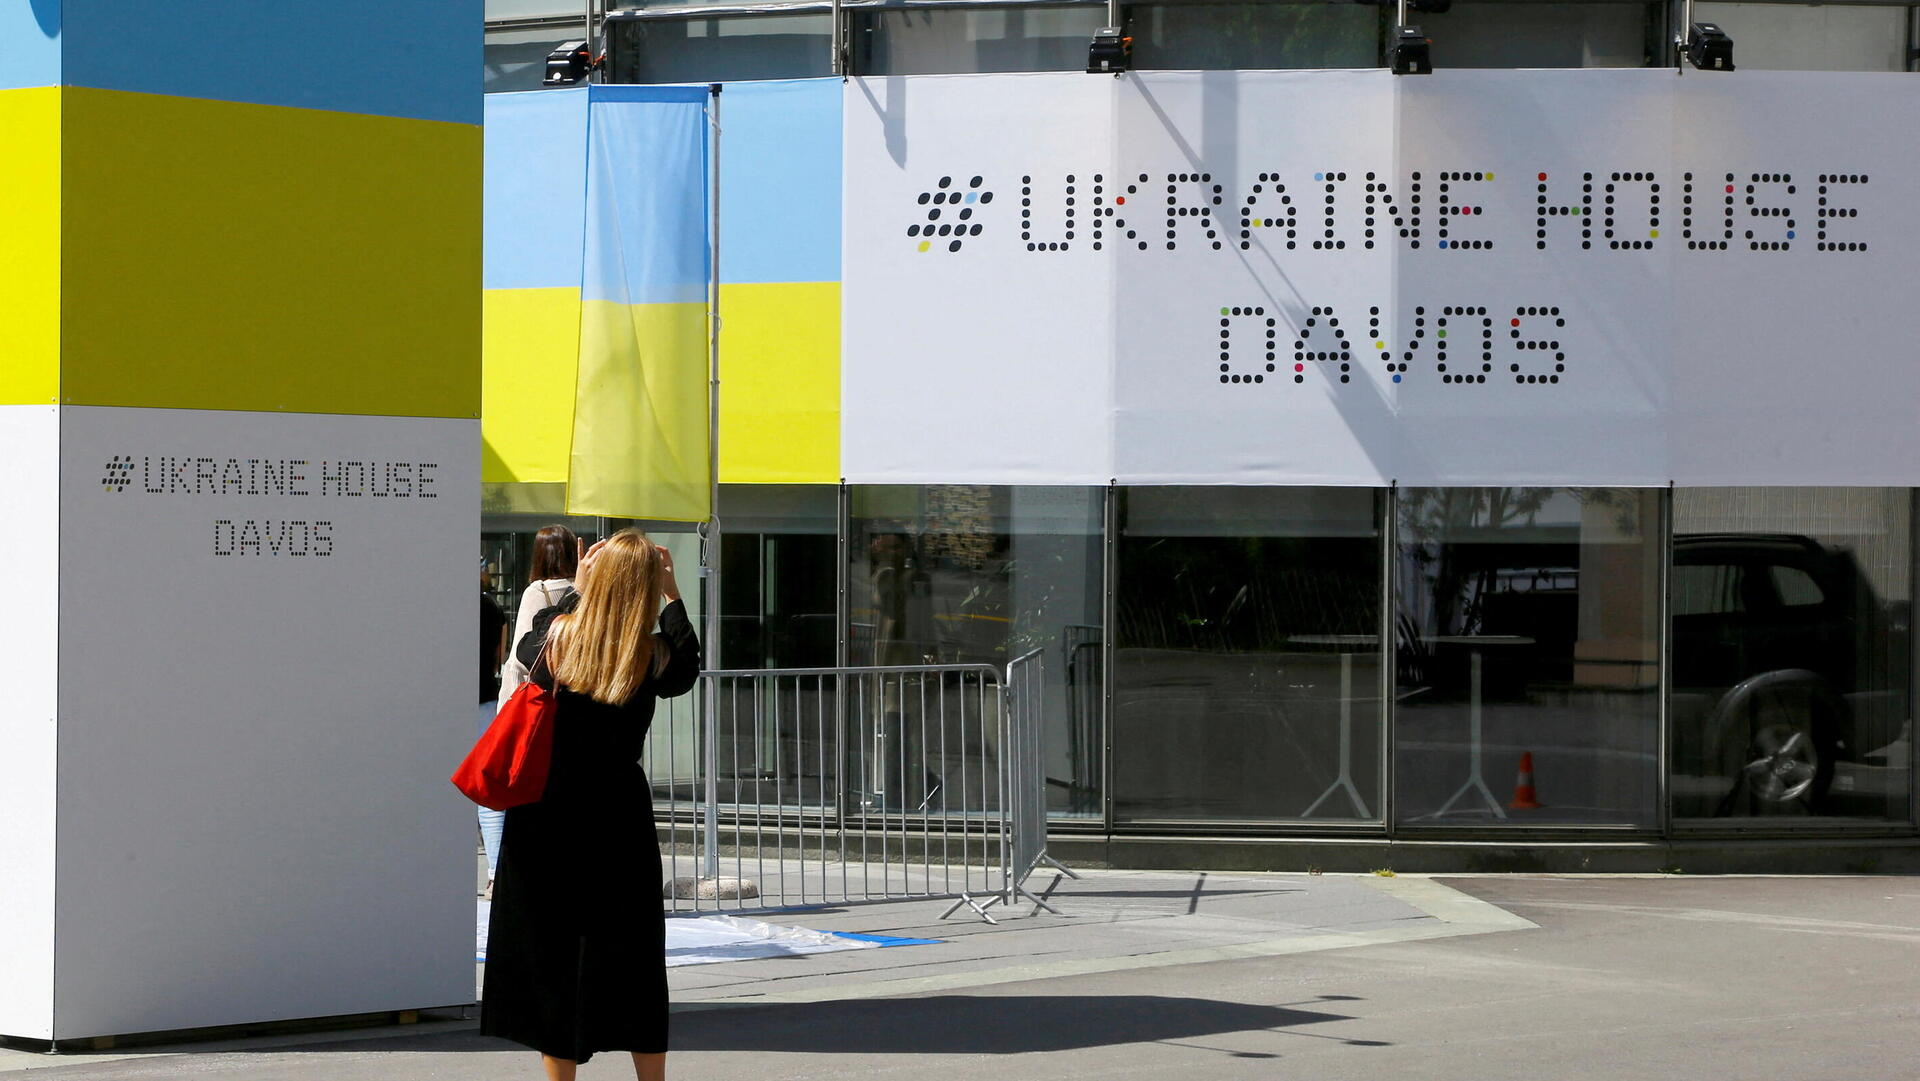 ביתן אוקראינה כנס הפורום הכלכלי העולמי דאבוס 2022